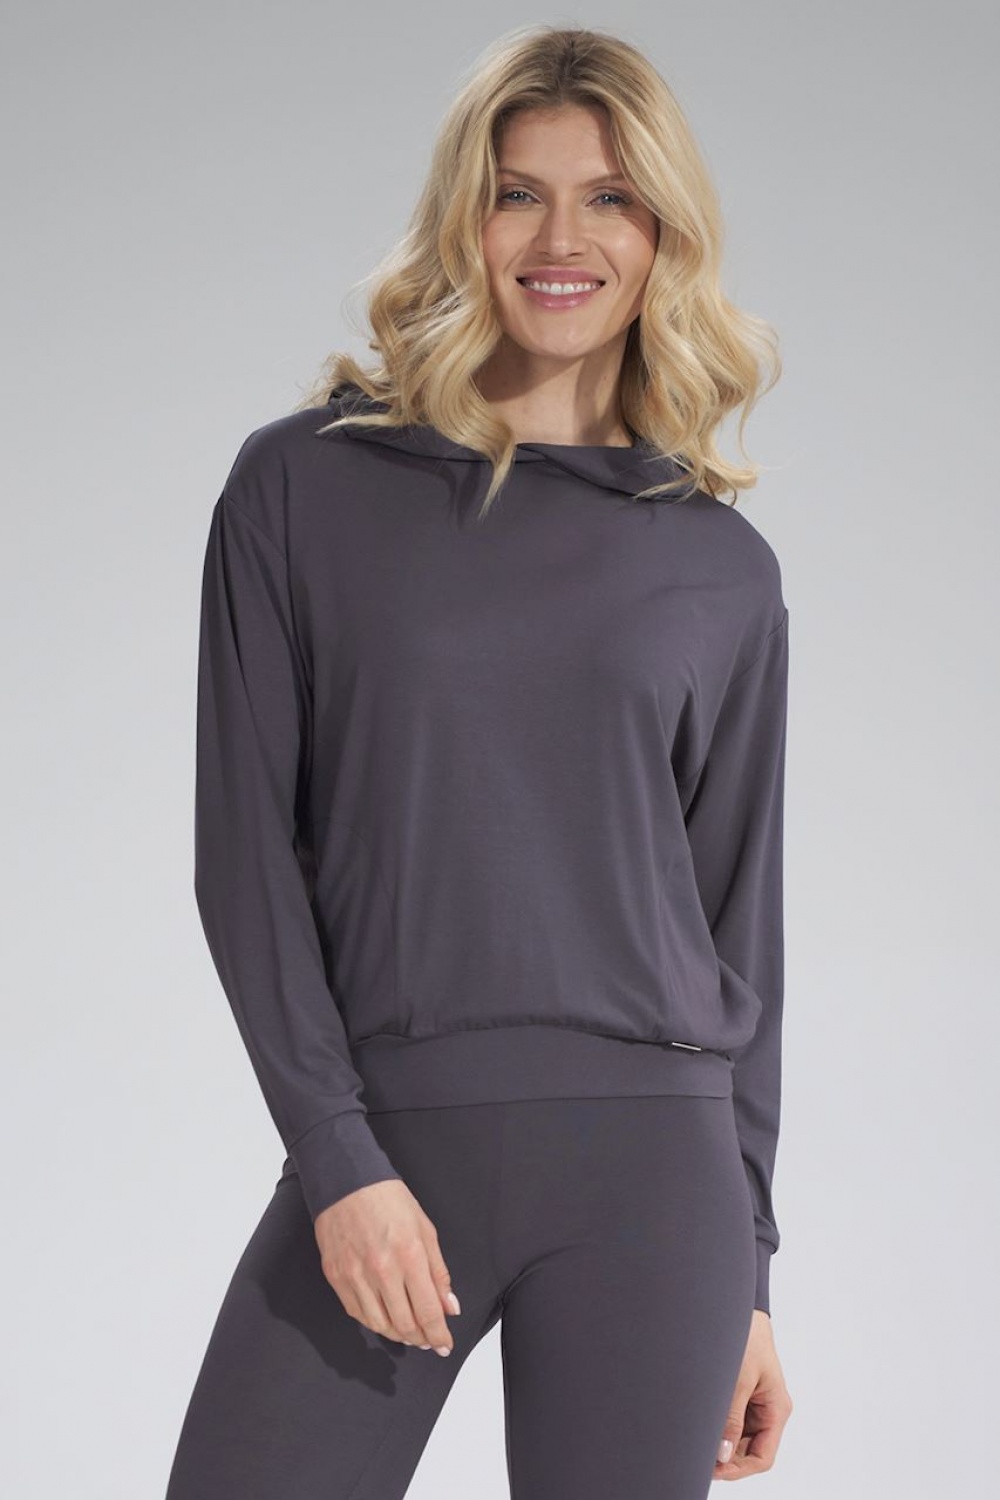 Sweater model 155979 Figl grau Damen